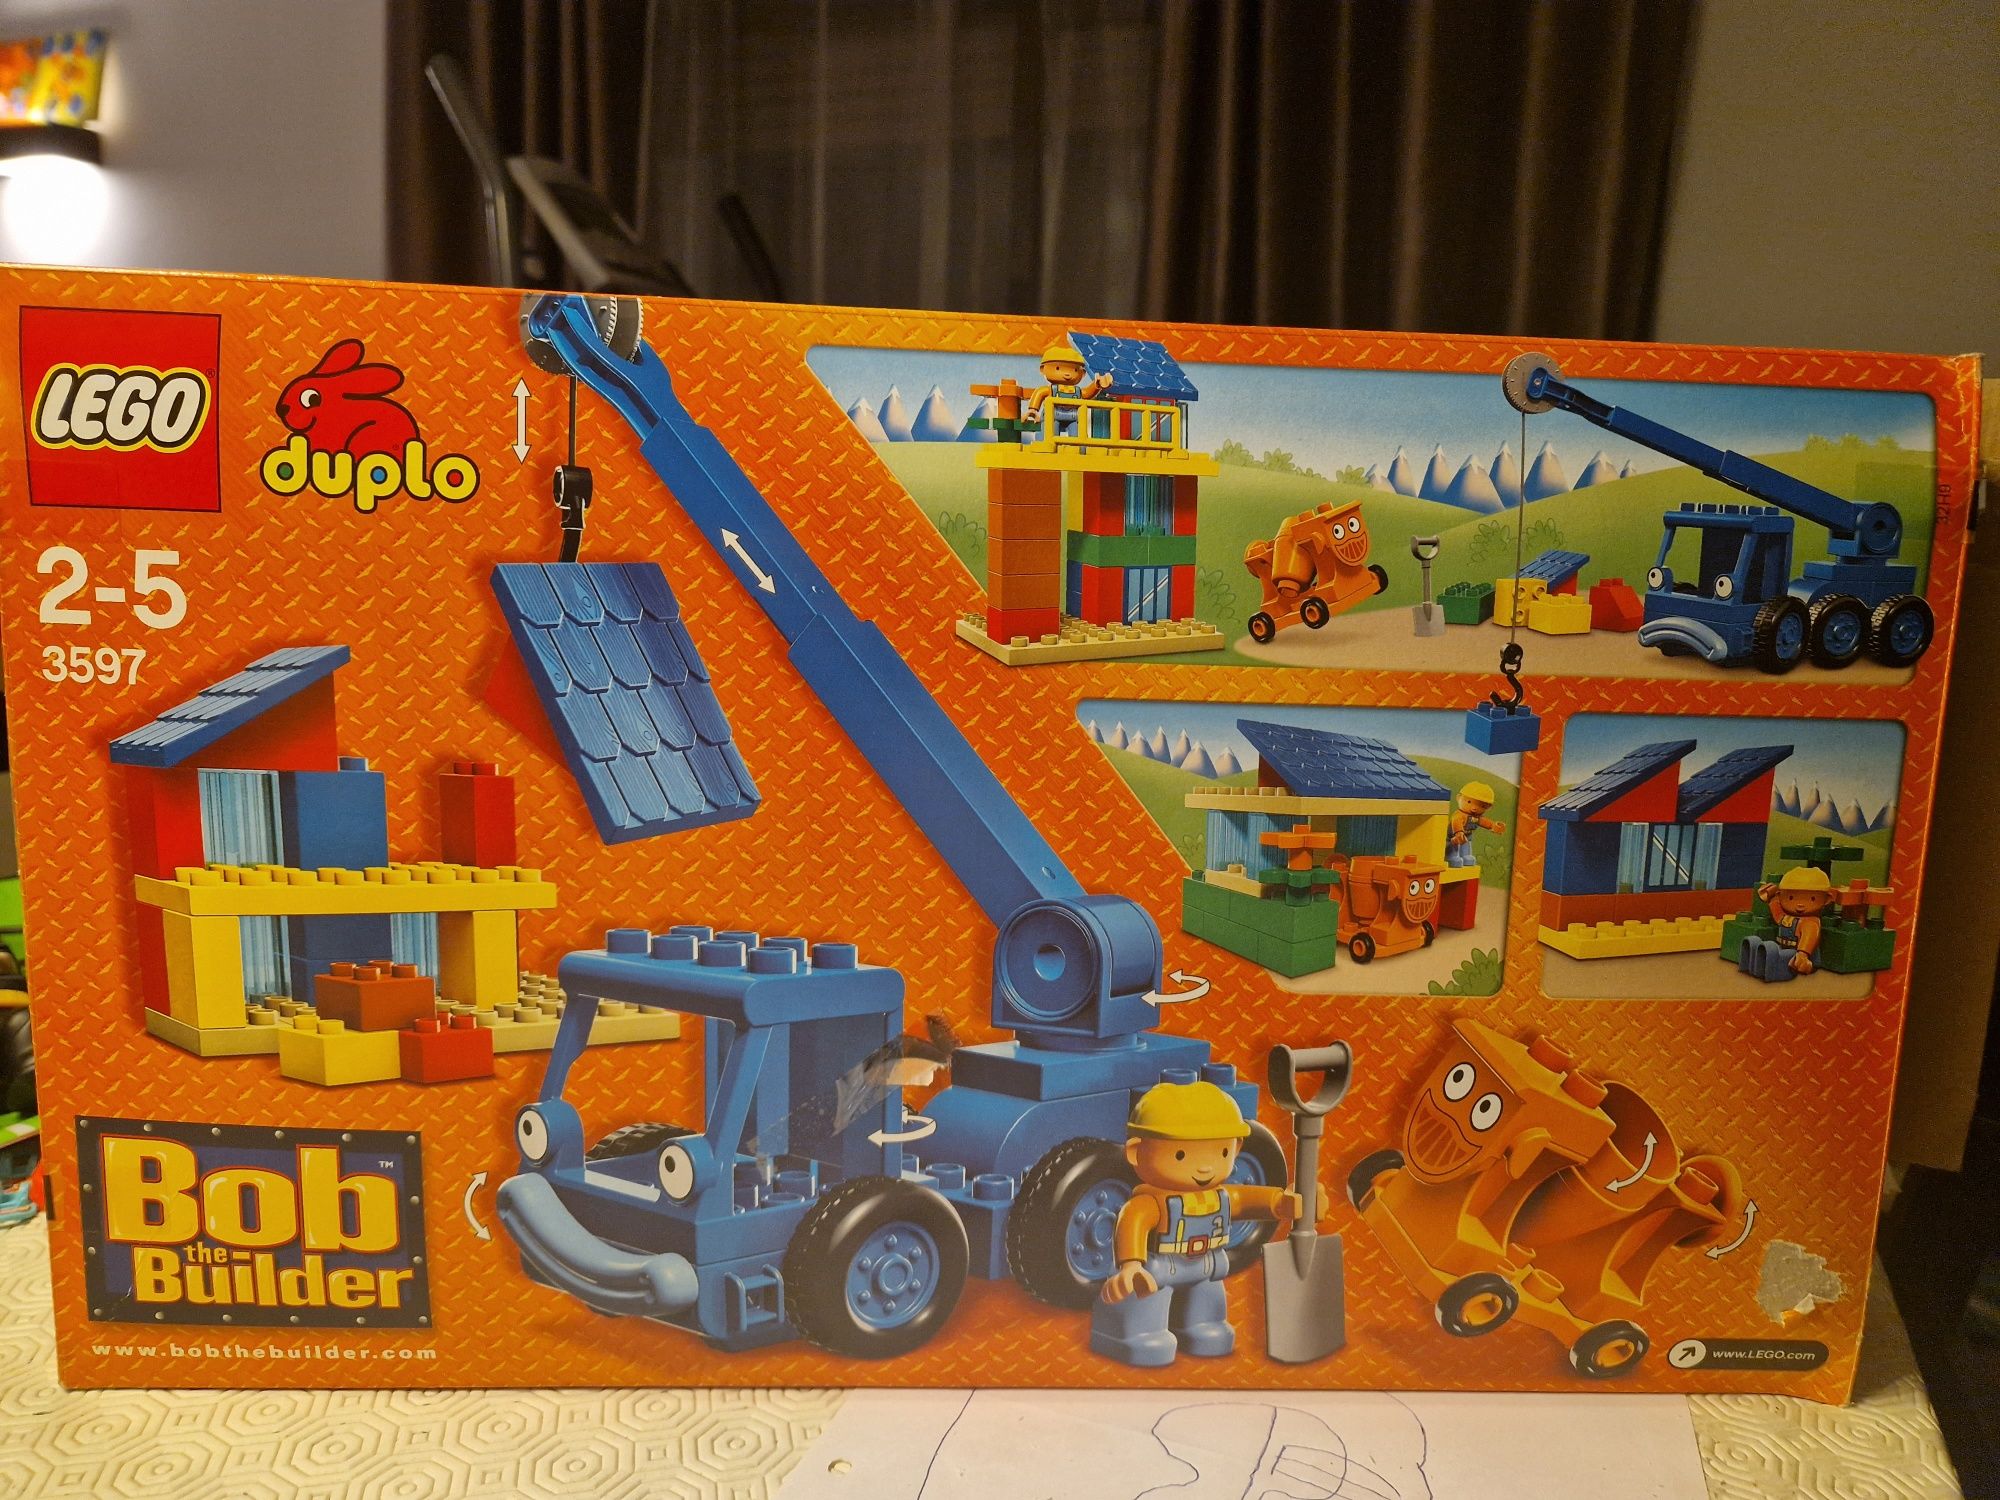 Lego duplo Bob o construtor - 3597